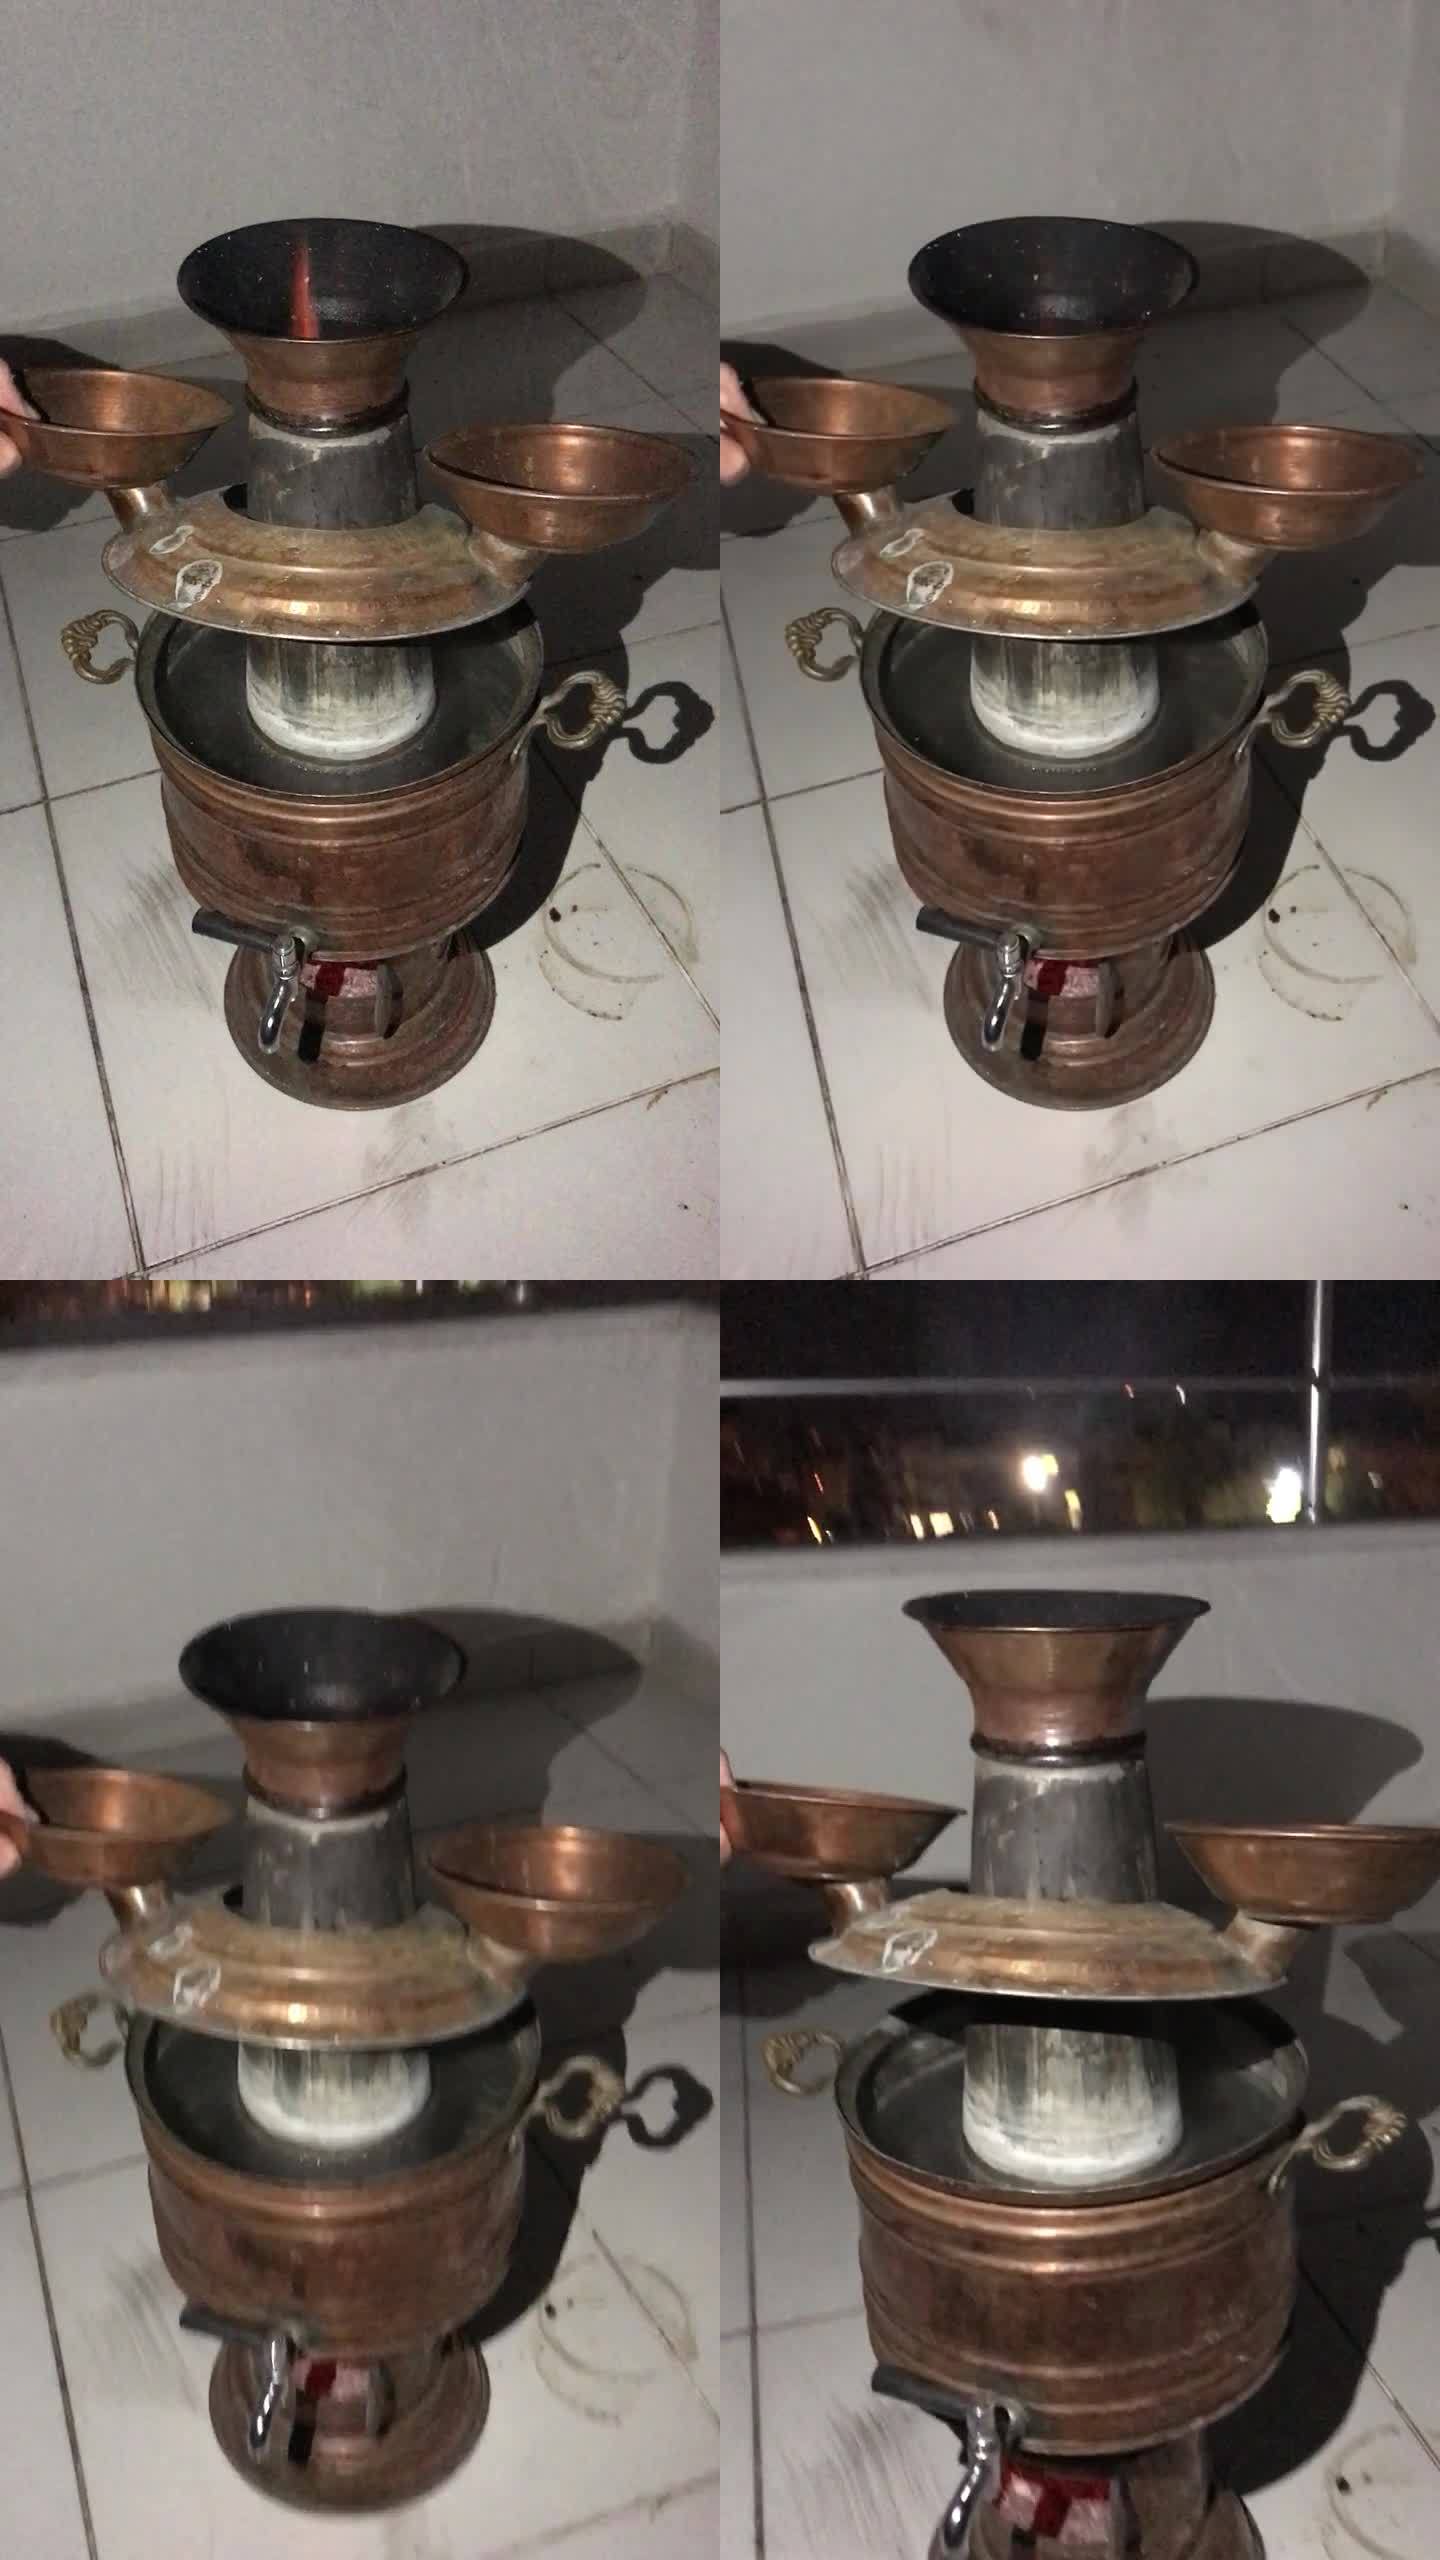 木头上的土耳其茶炊。可以看到热量和火焰。抬起肠道，检查水的加热。外面是晚上。垂直视频。